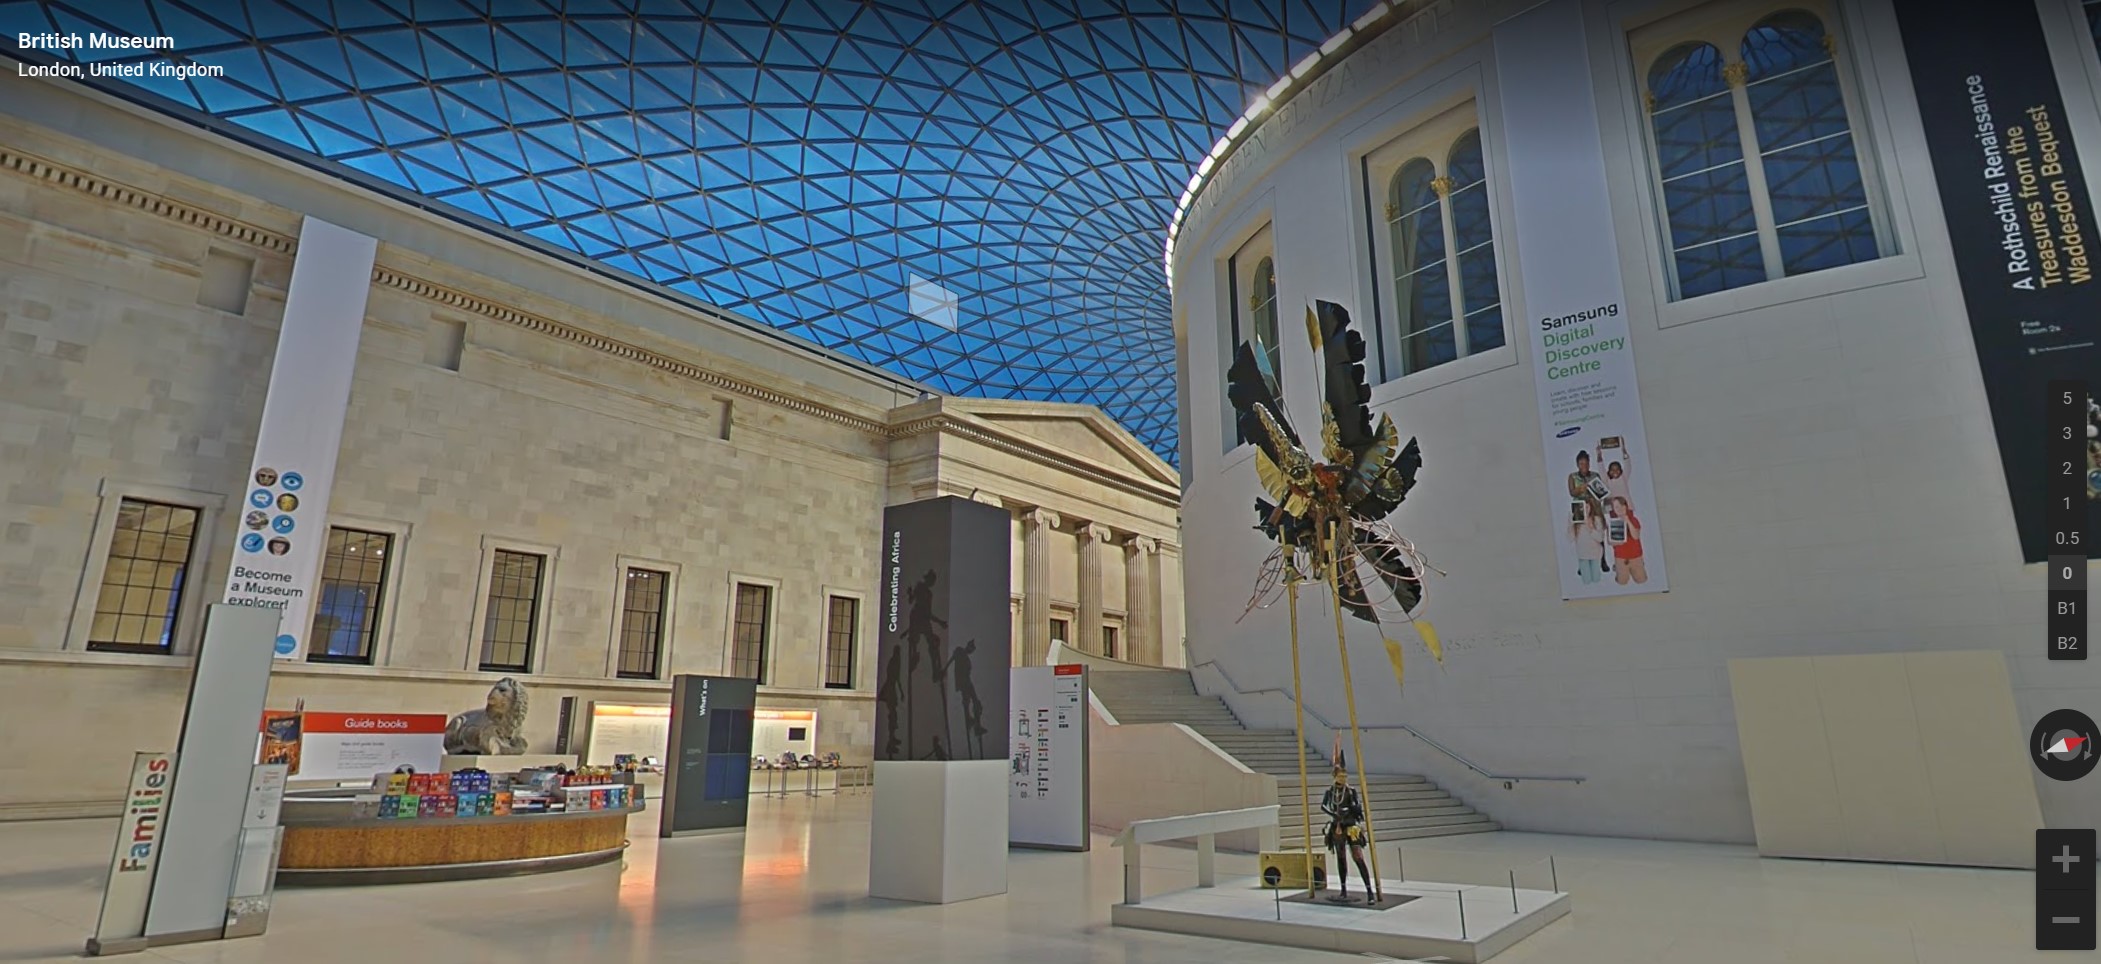 The British Museum, London, UK